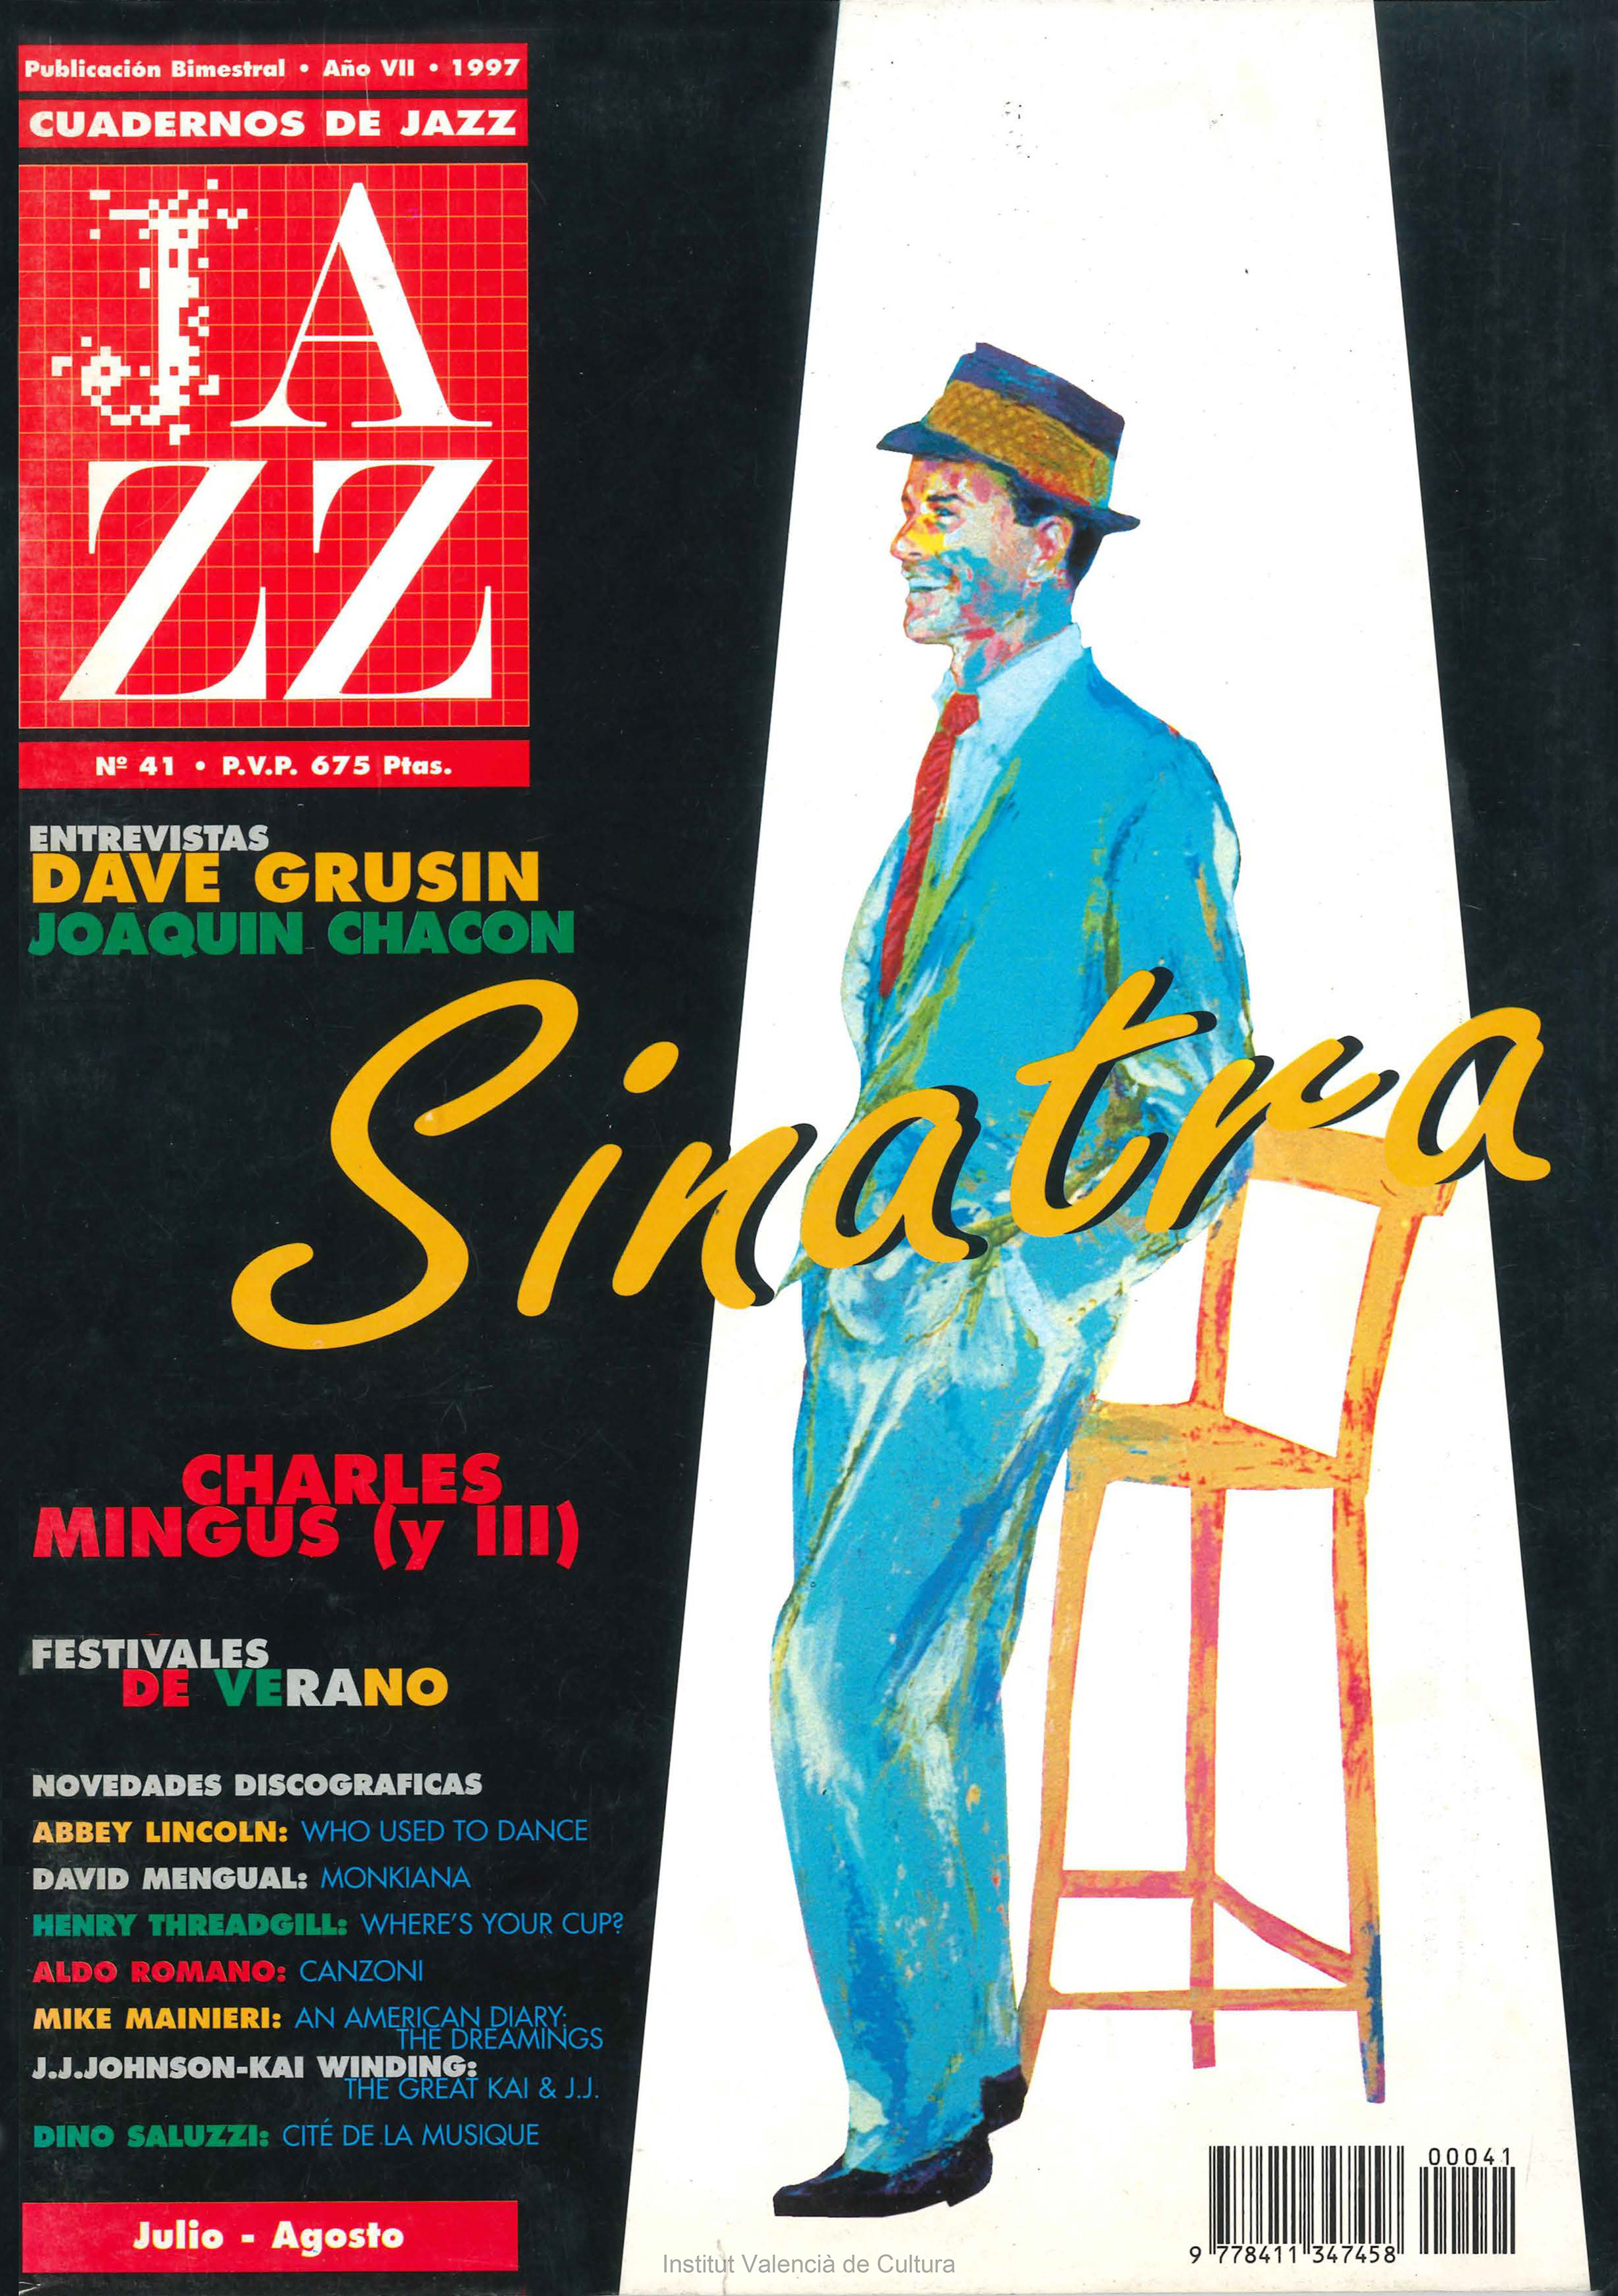 Cubierta del número 41 de la revista Cuadernos de Jazz